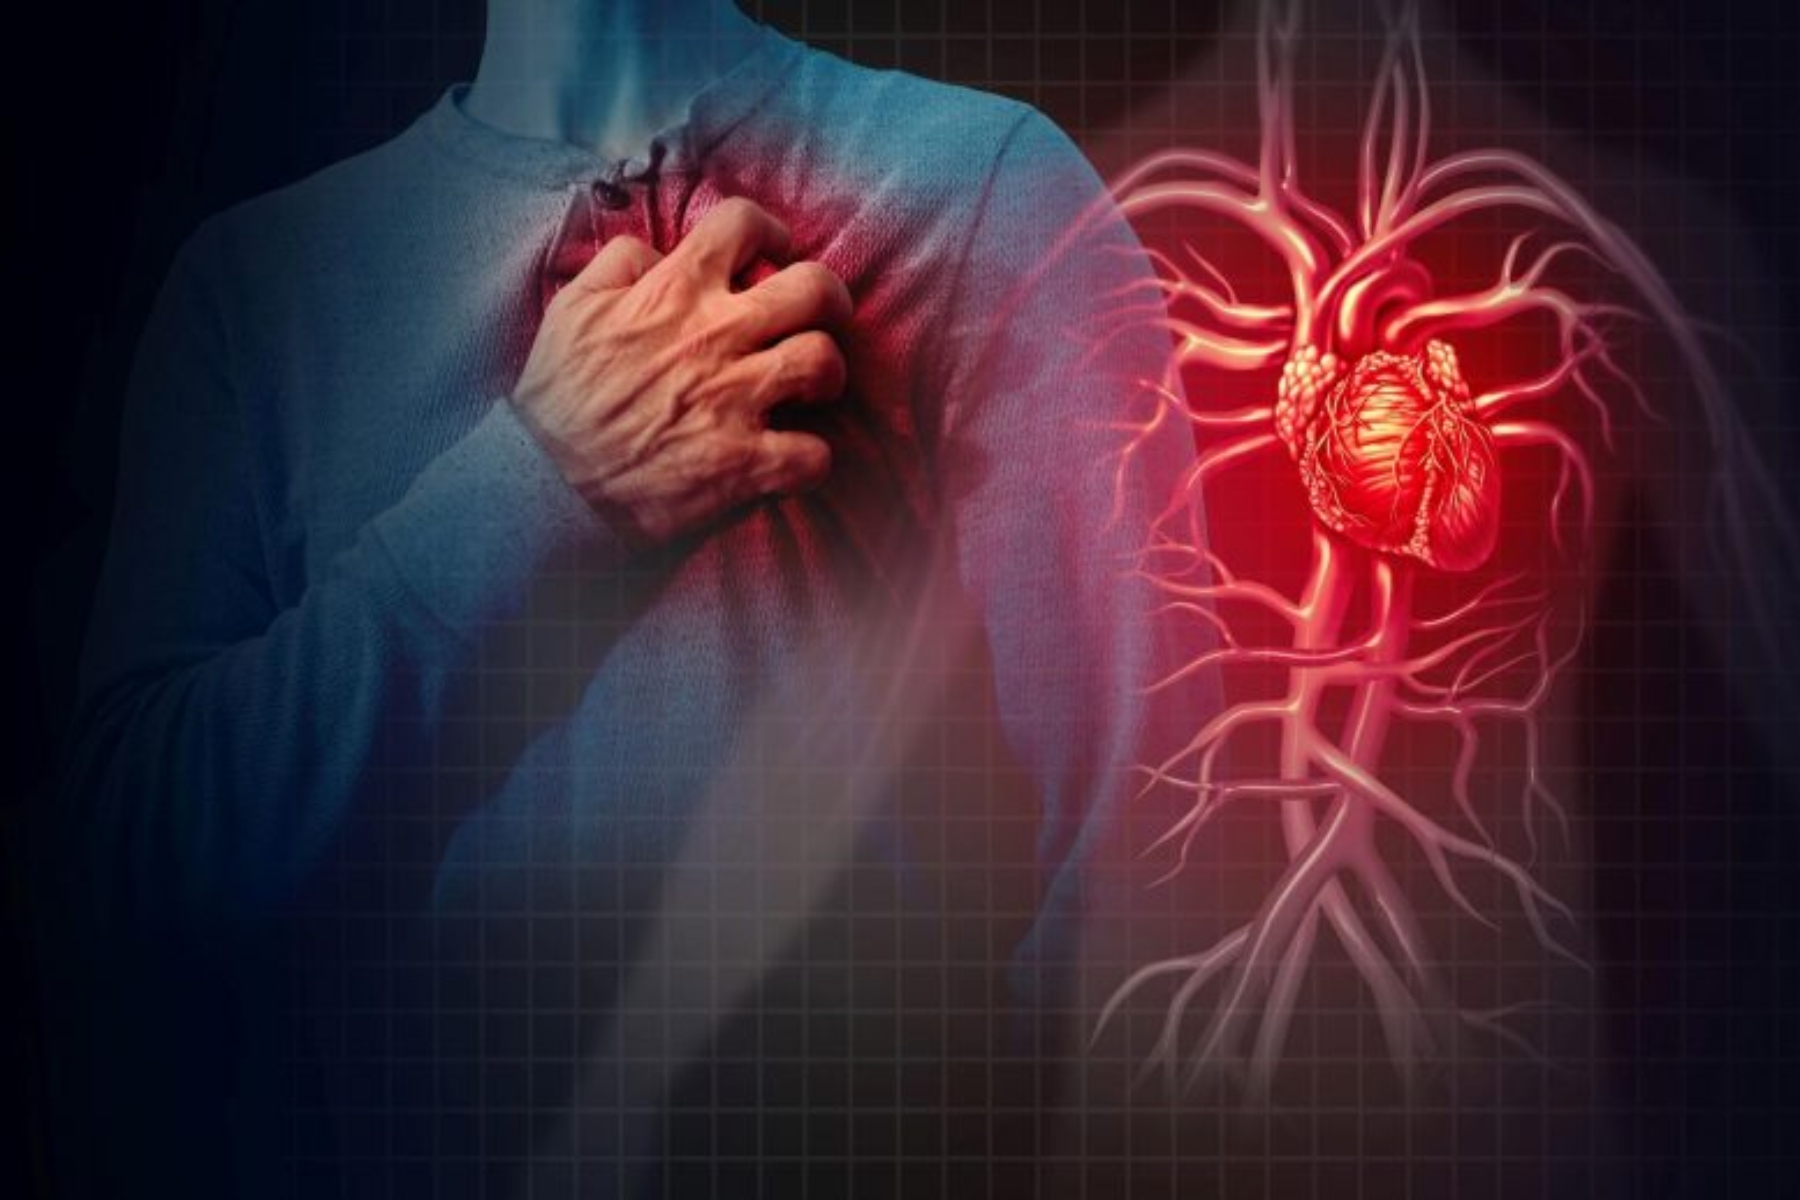 ΗΠΑ καρδιακή νόσος: 4 στους 10 Αμερικανούς αντιμετώπισαν καρδιακά προβλήματα στην πανδημία